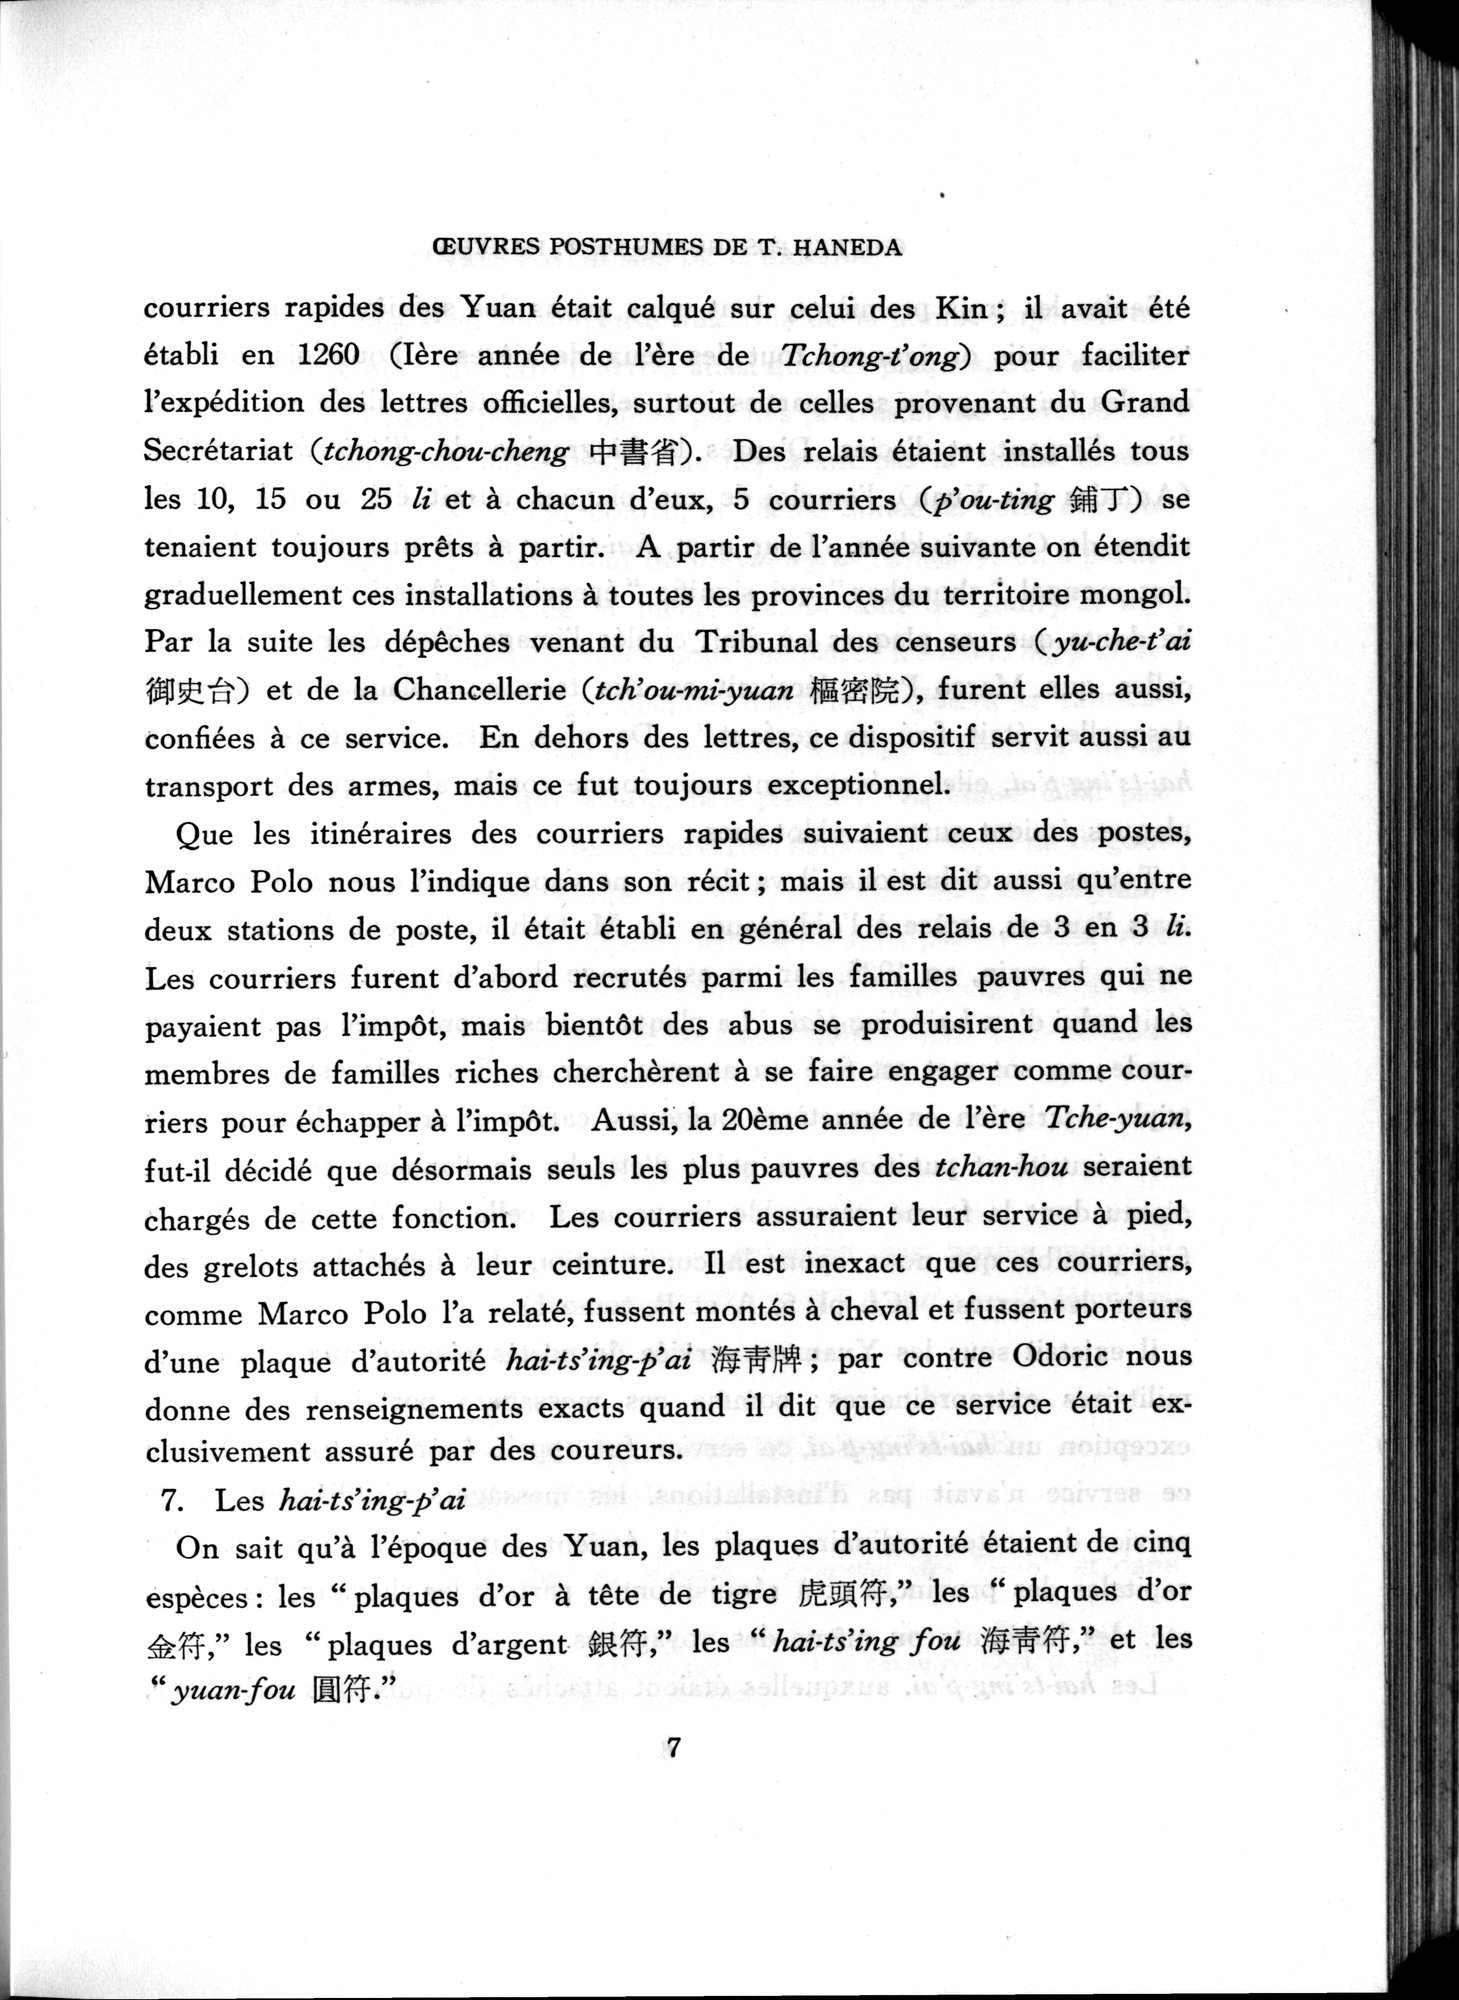 羽田博士史学論文集 : vol.2 / Page 922 (Grayscale High Resolution Image)